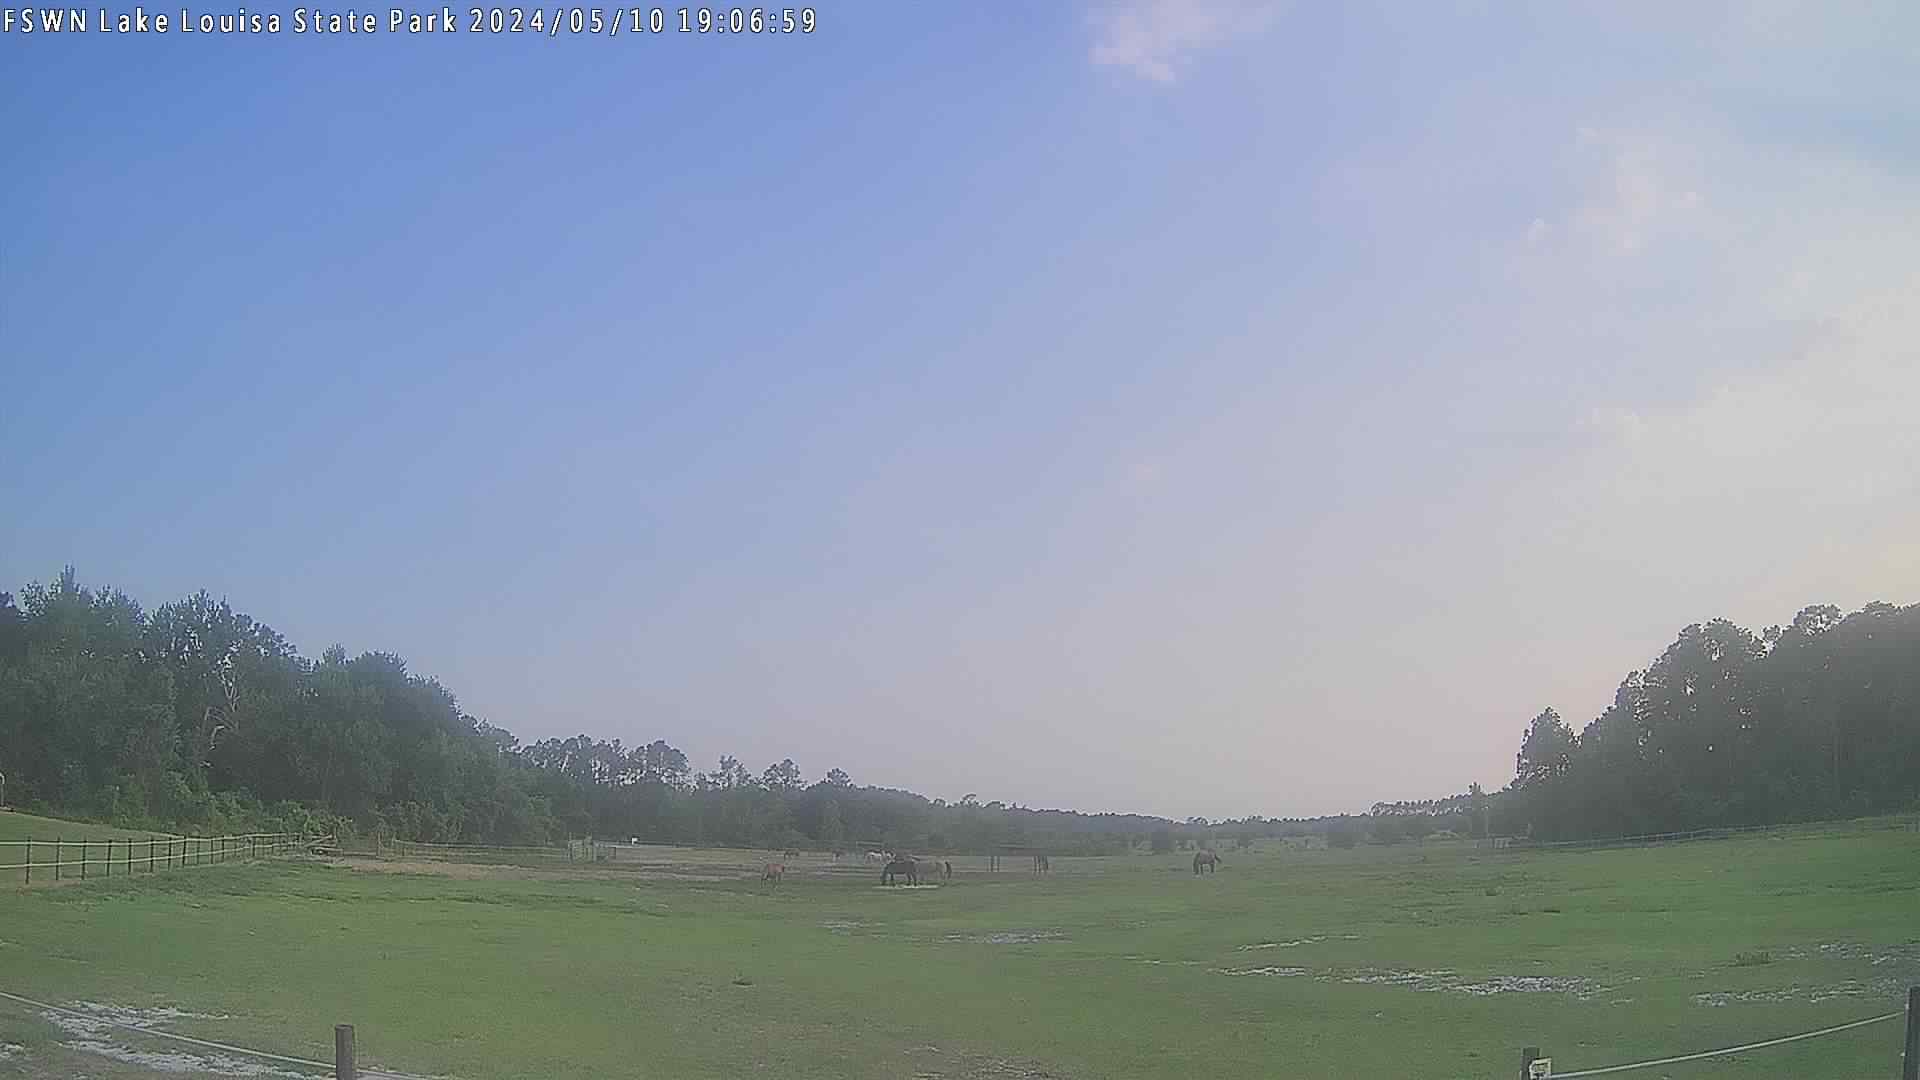  WeatherSTEM Cloud Camera FSWNLakeLouisa in Lake County, Florida FL at FSWN Lake Louisa State Park